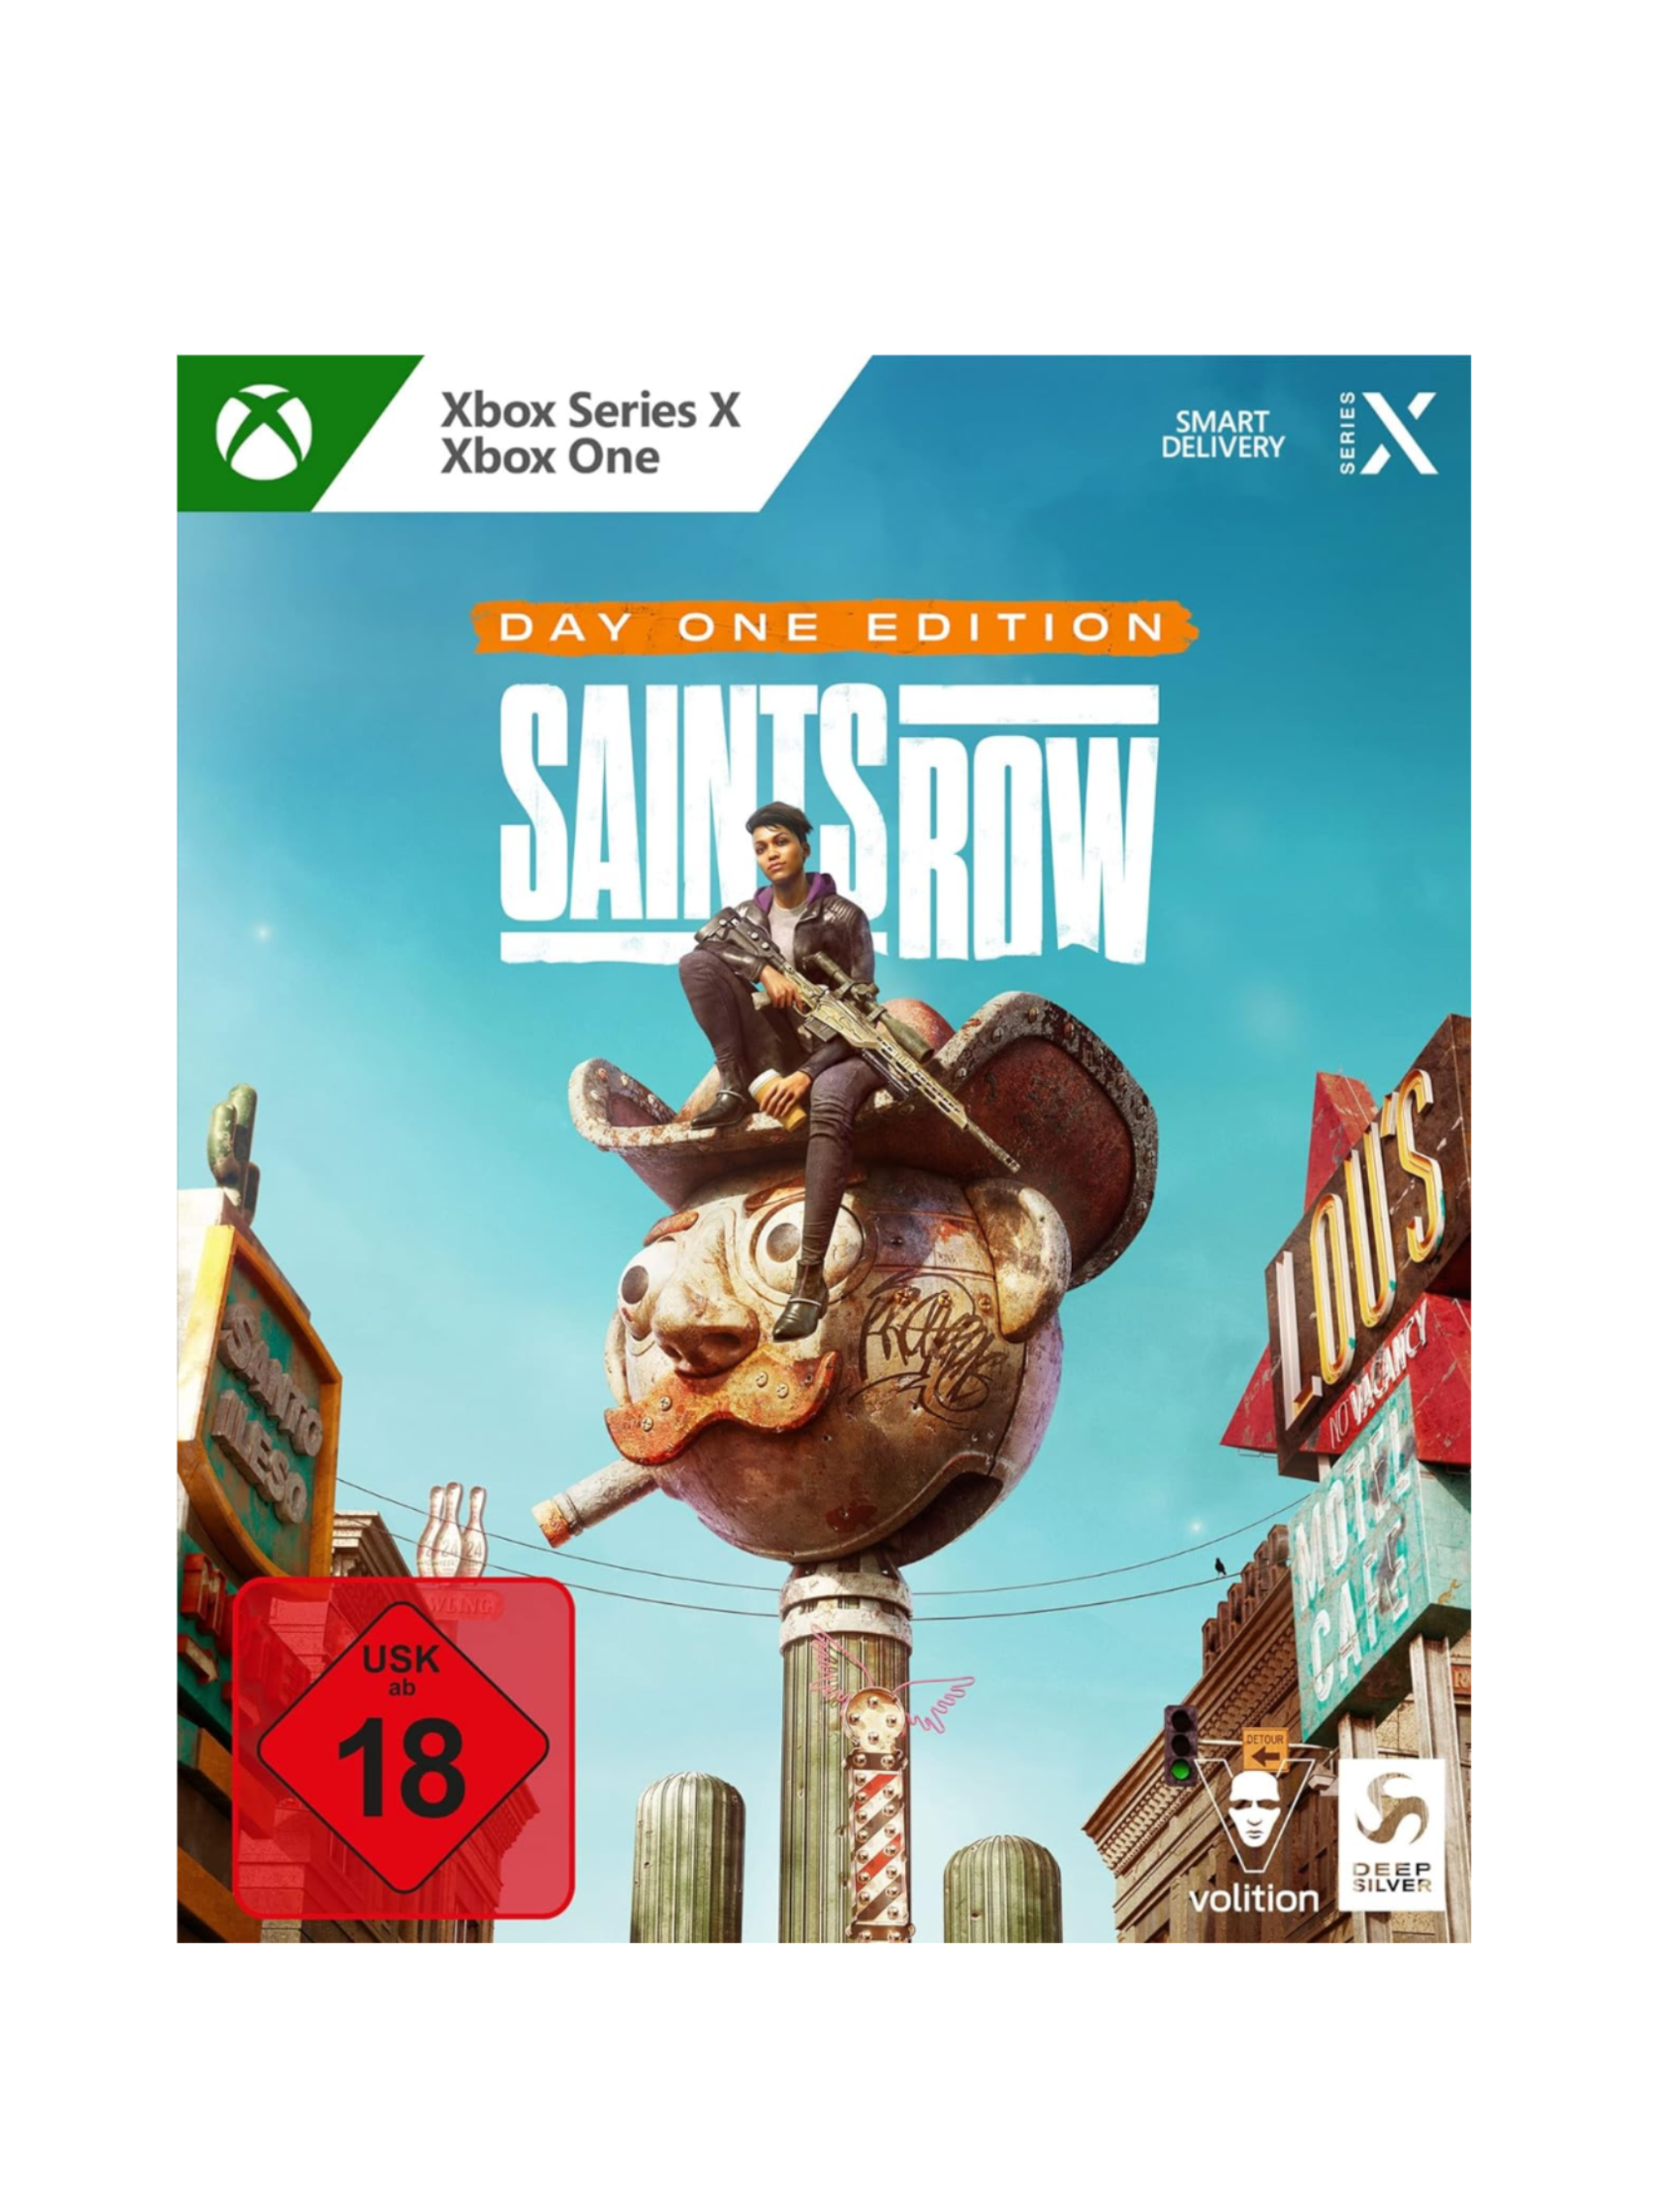 Saints Row Day One Edition (Xbox One und Series X) Neu